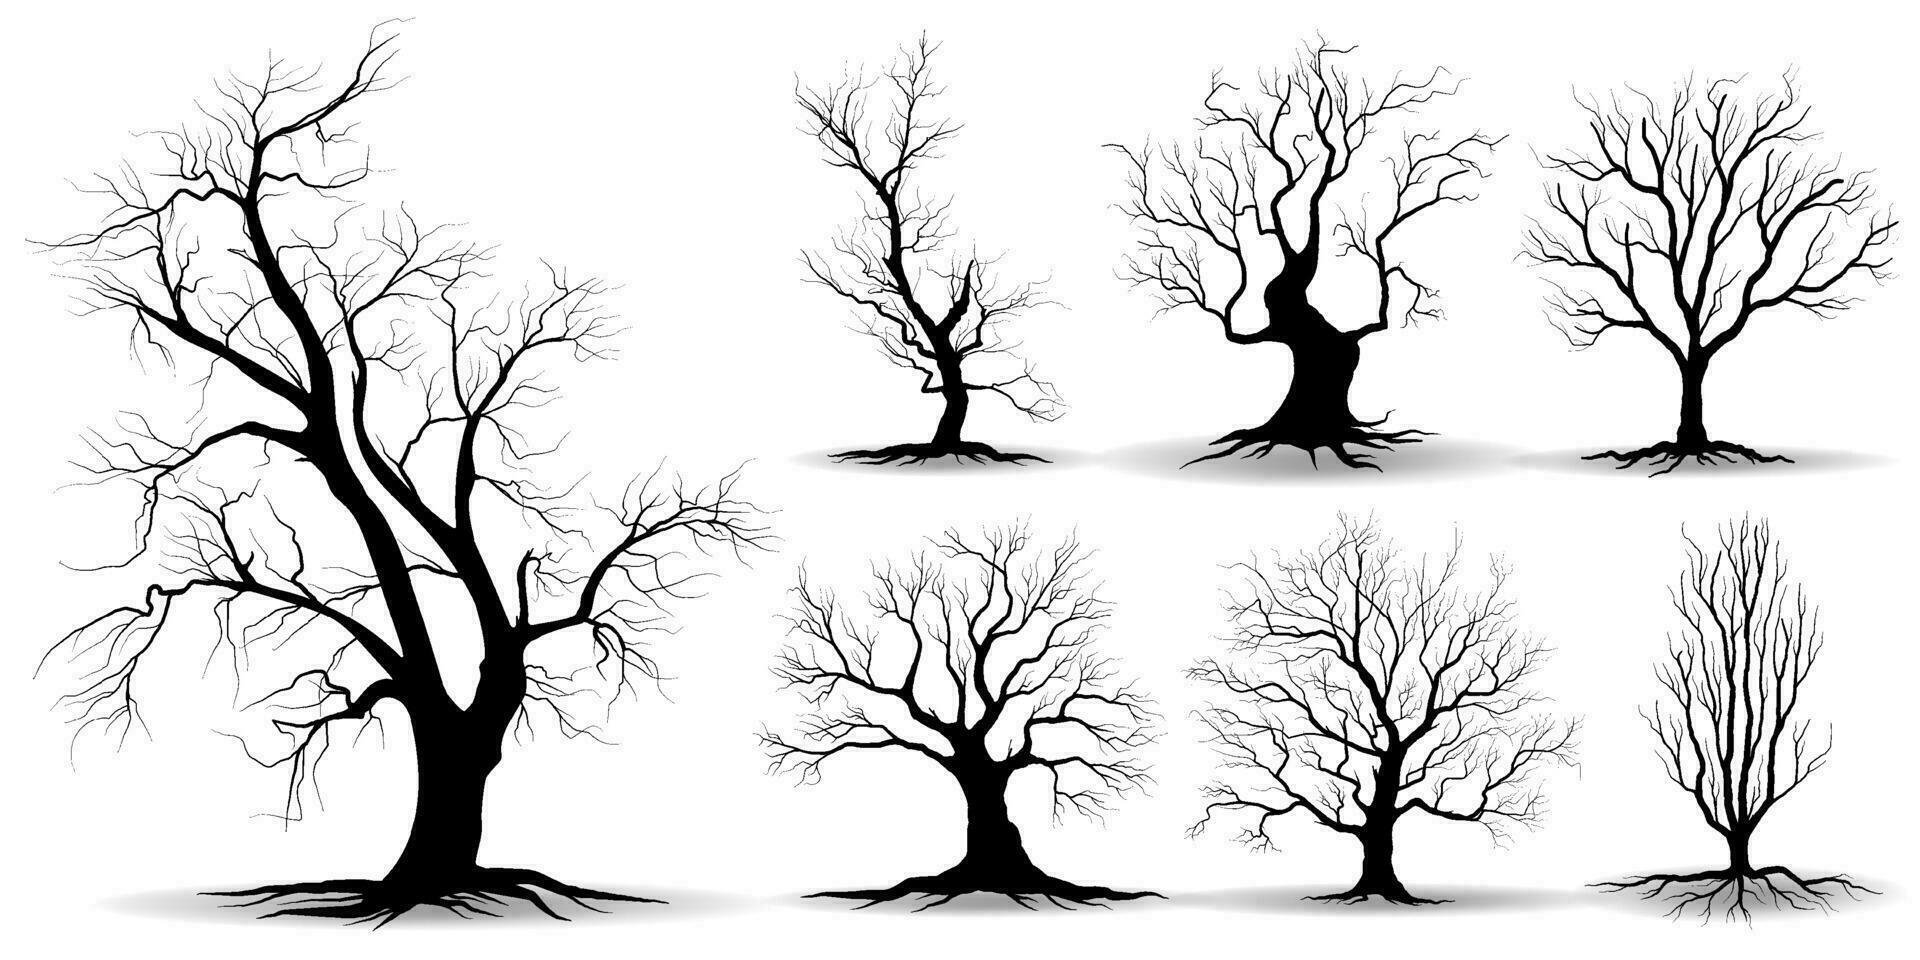 stor samling svart träd eller naken träd silhuetter vektor. hand dragen isolerat illustrationer. vektor